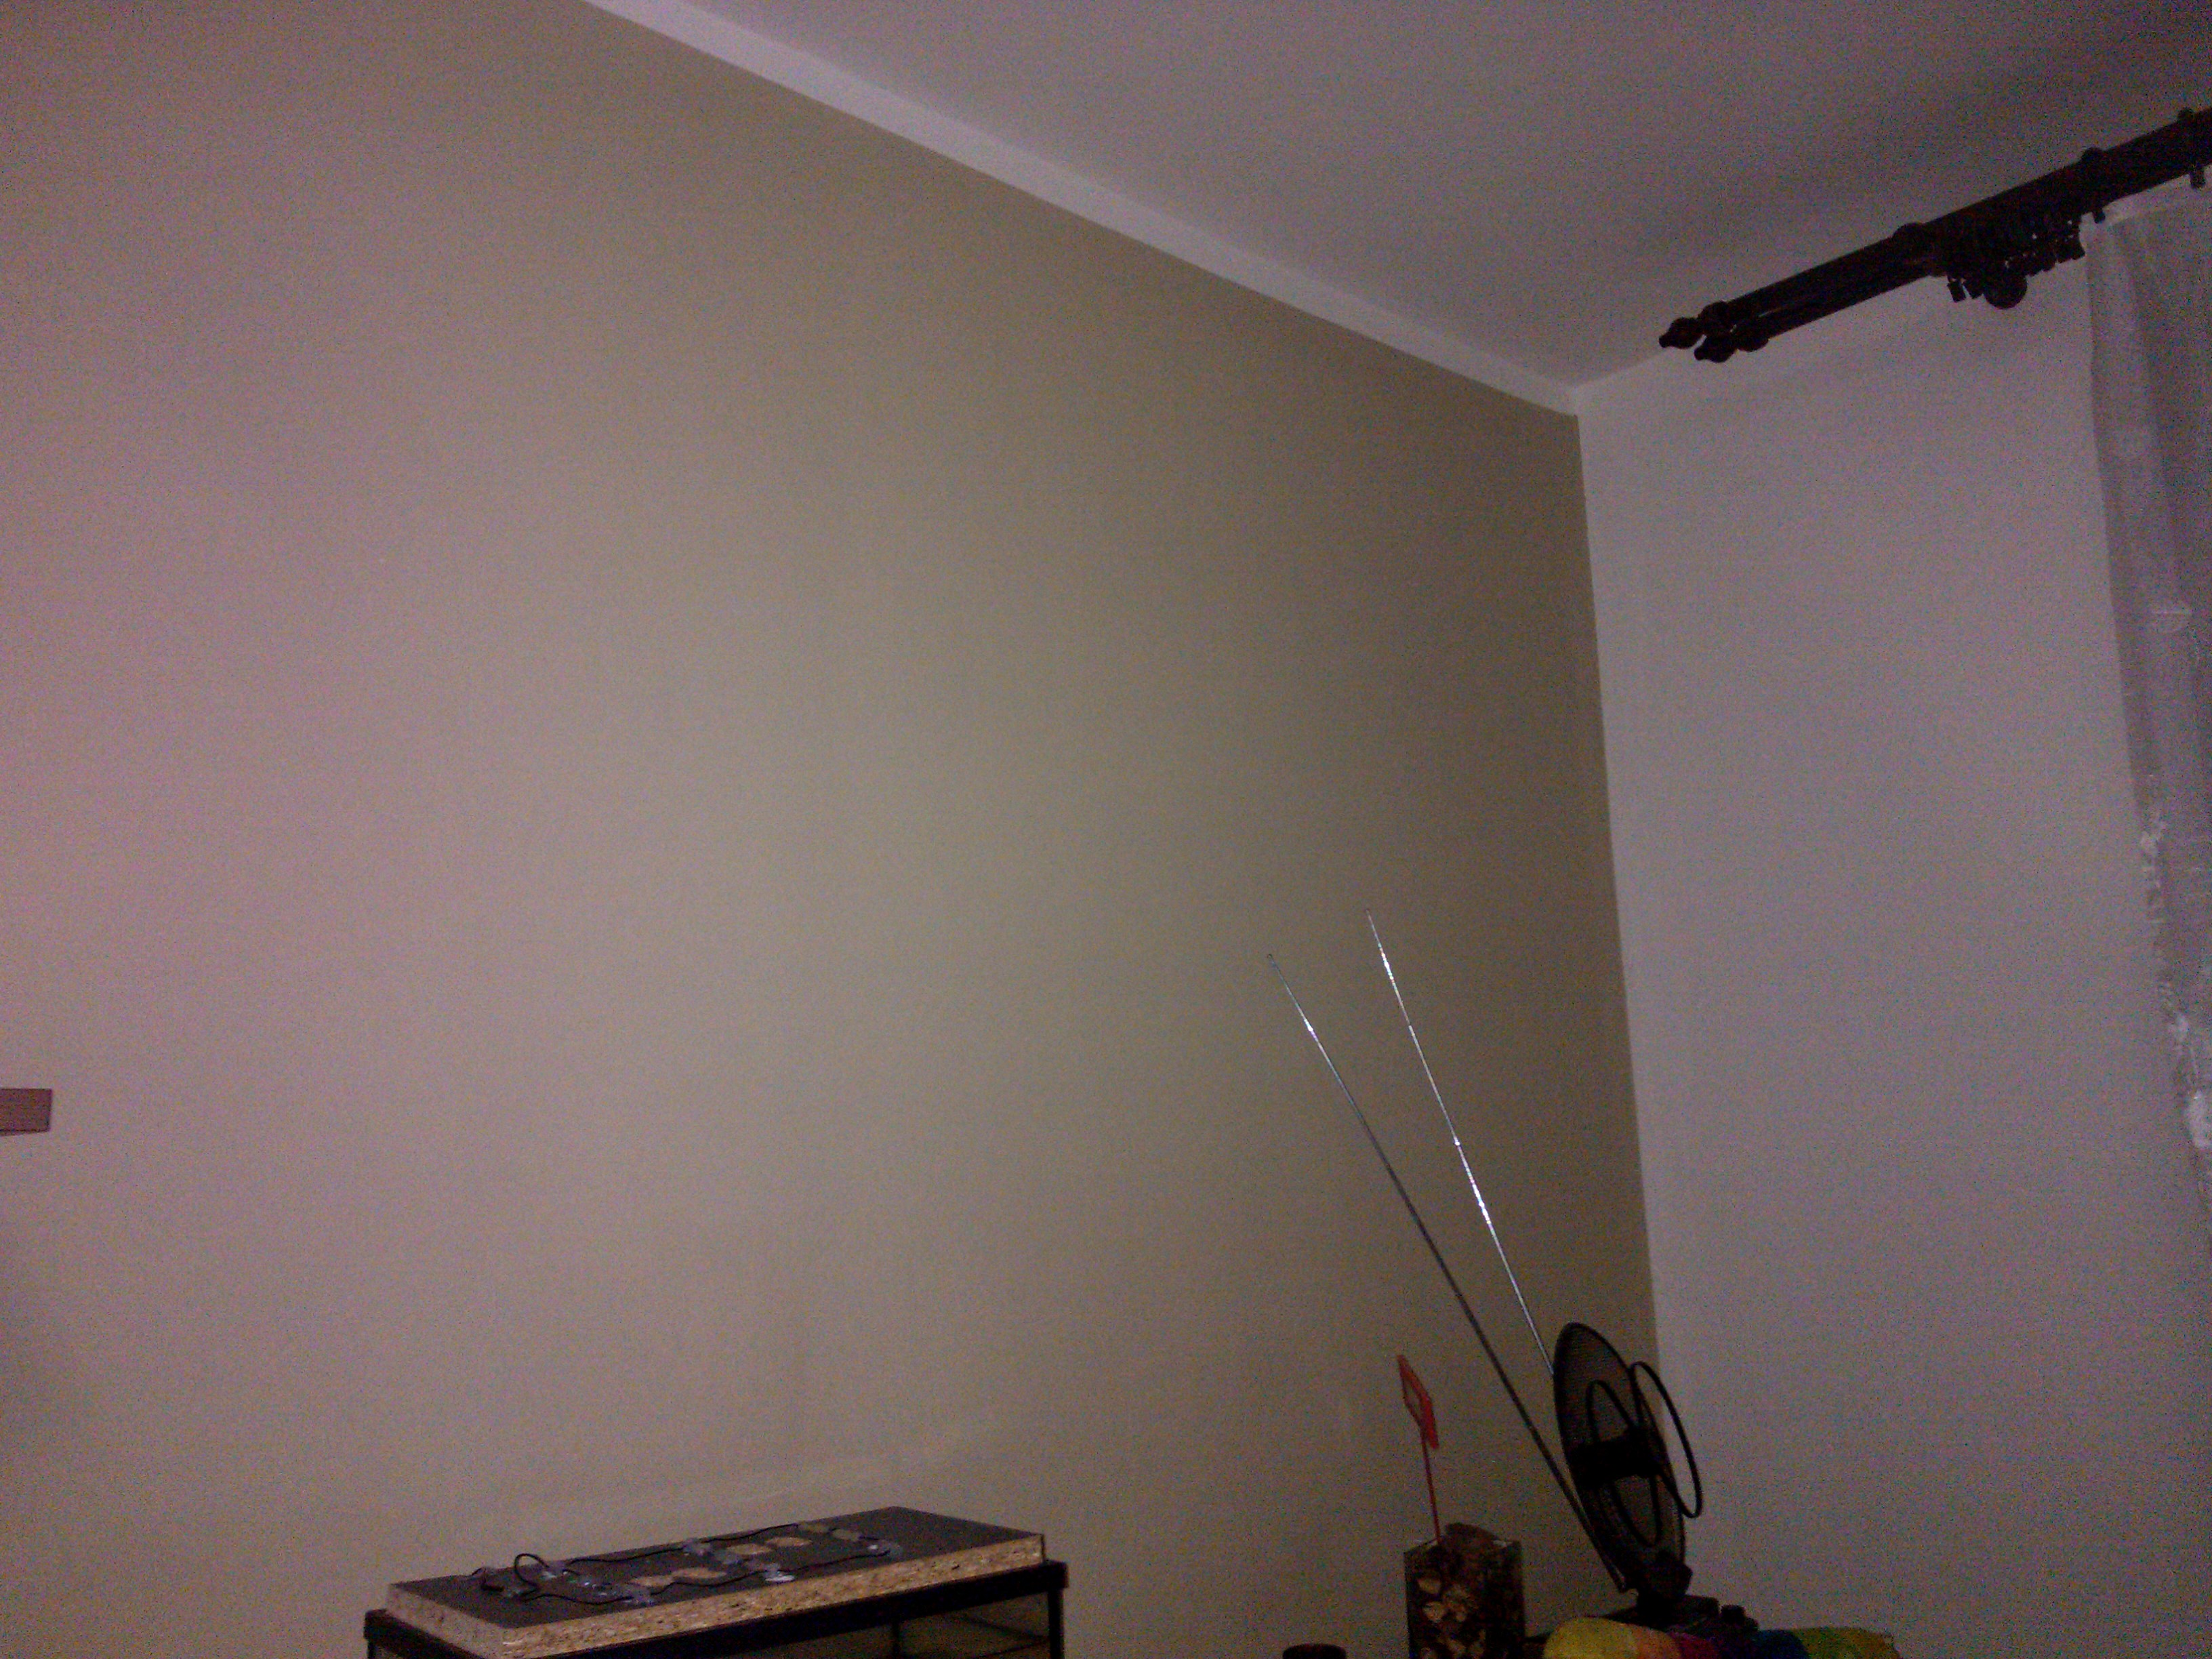 Malování obývacího pokoje, omyvatelné barvy